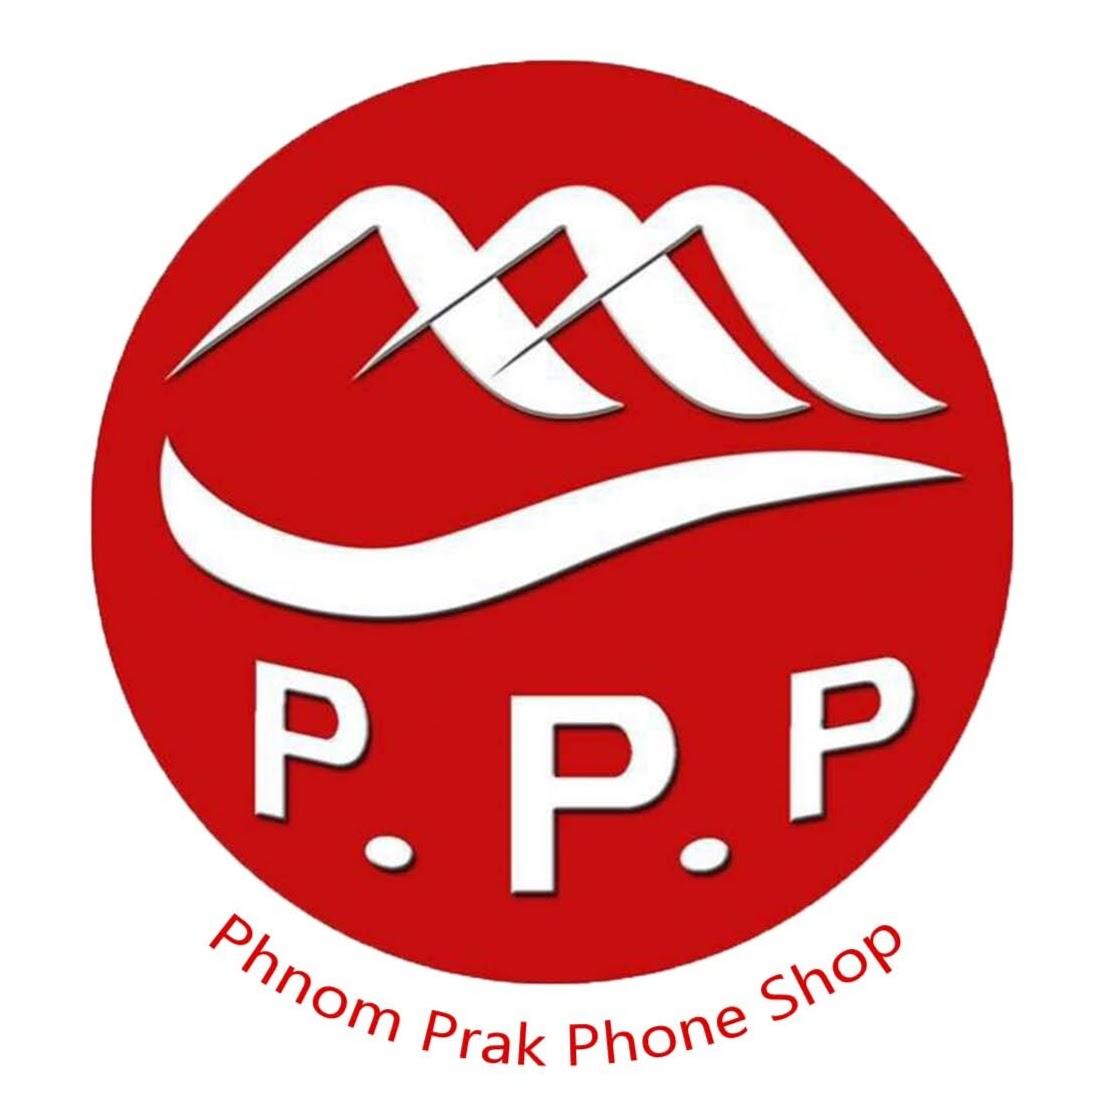 PhnomPrak PhoneShop